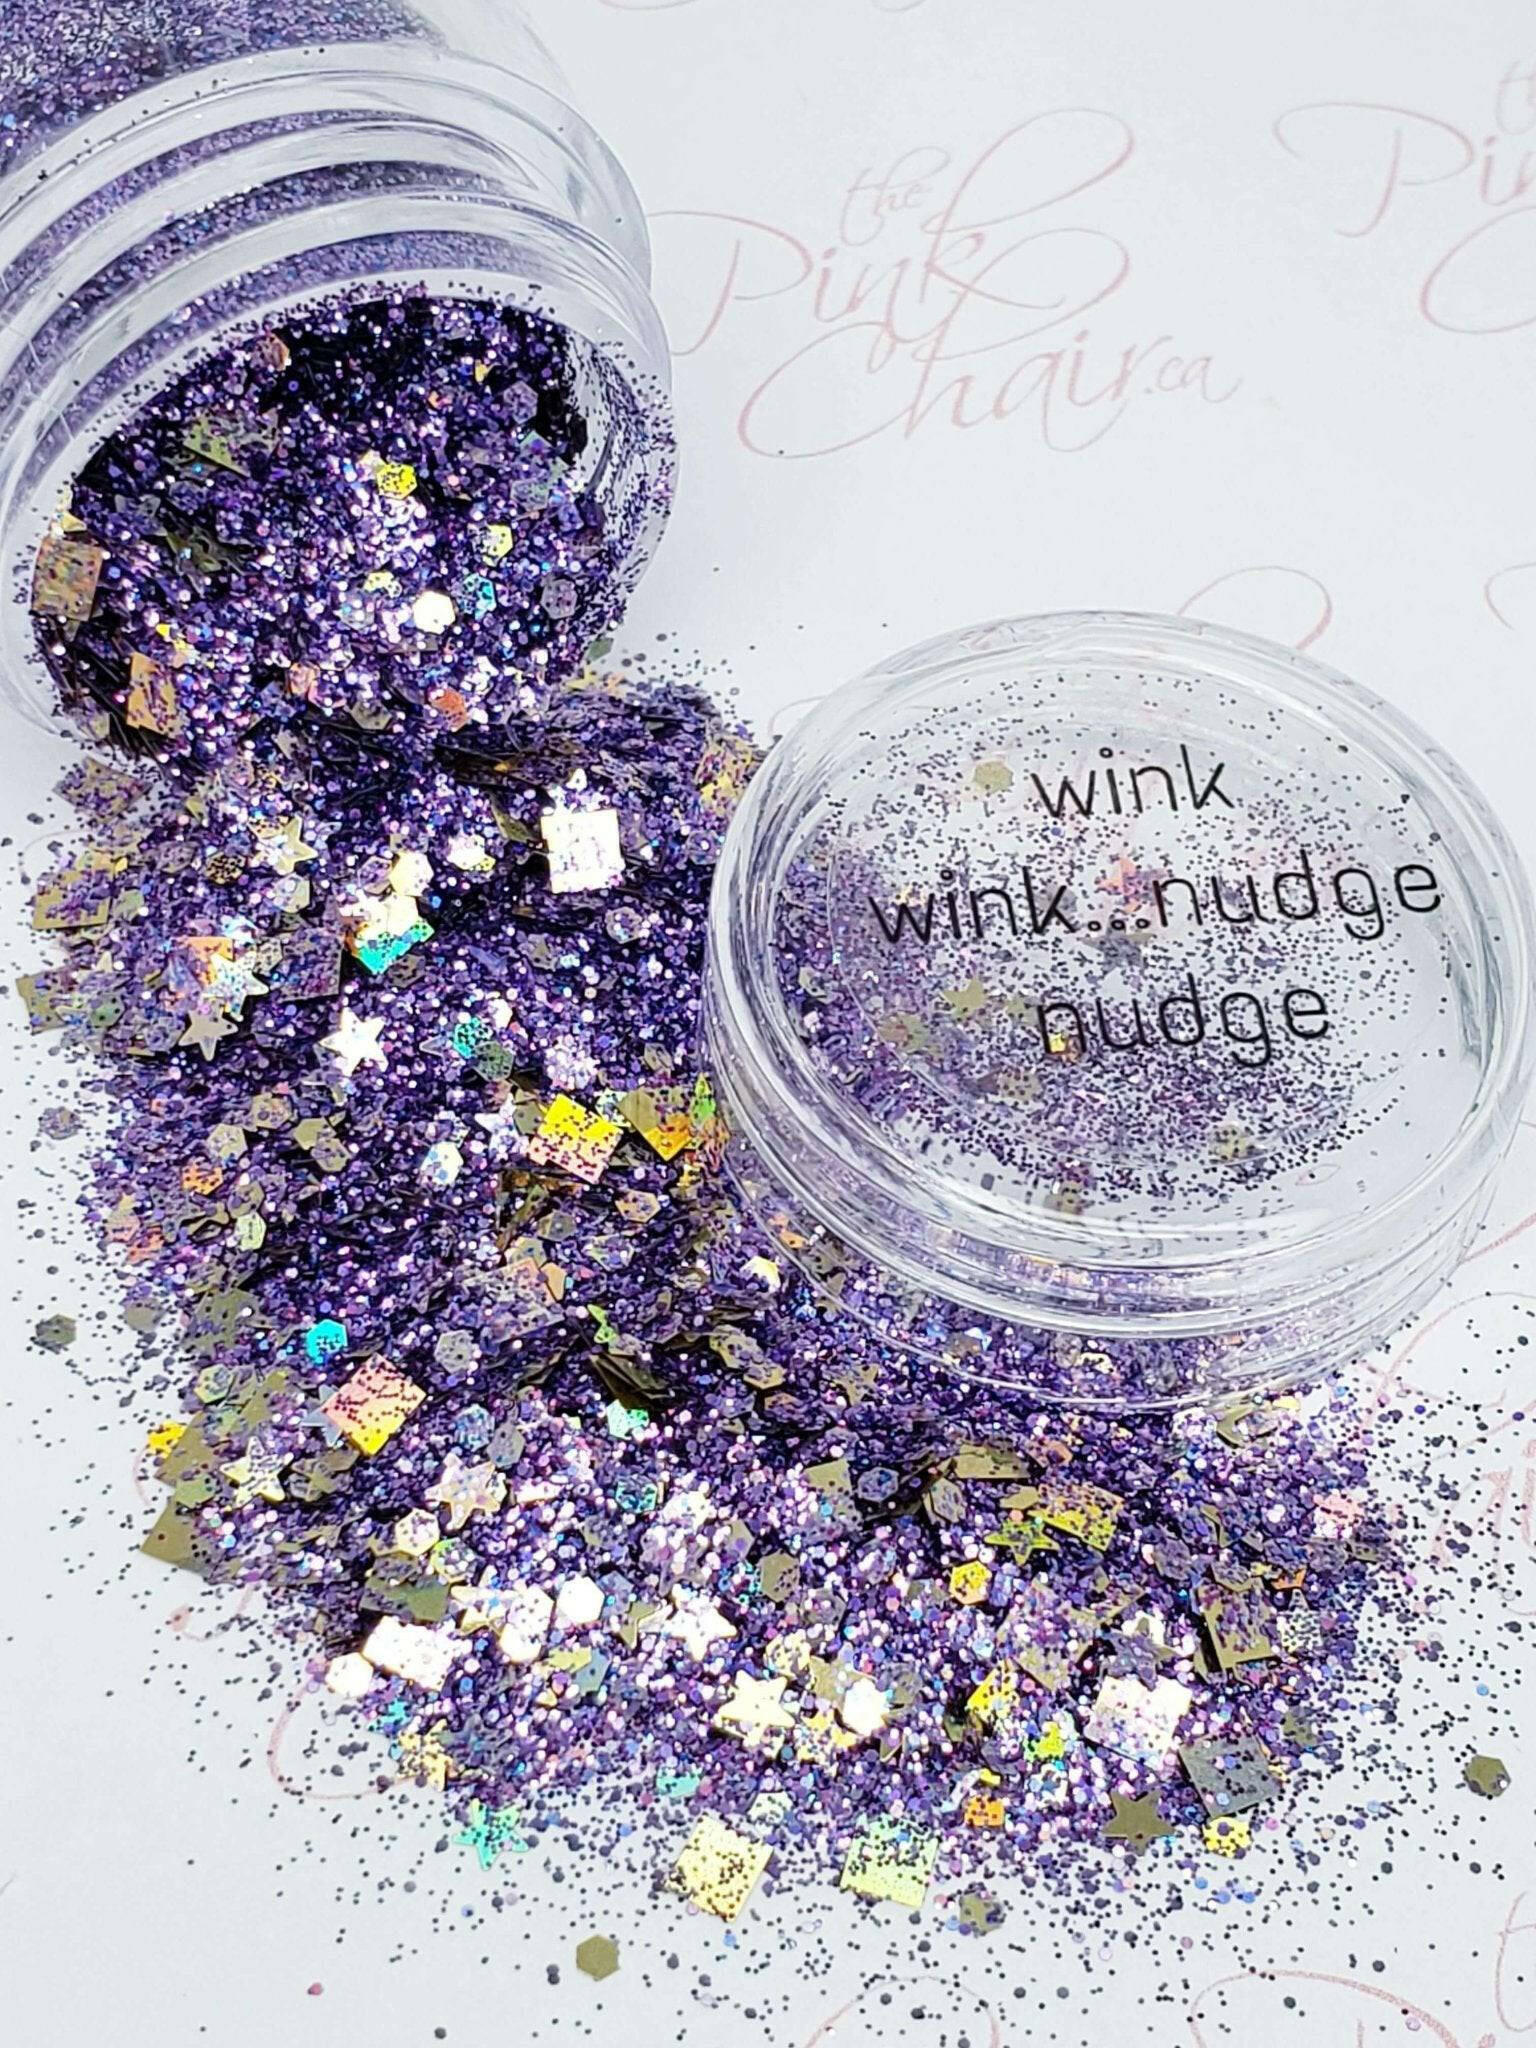 Wink Wink... Nudge Nudge, Glitter (248) - thePINKchair.ca - Glitter - thePINKchair nail studio